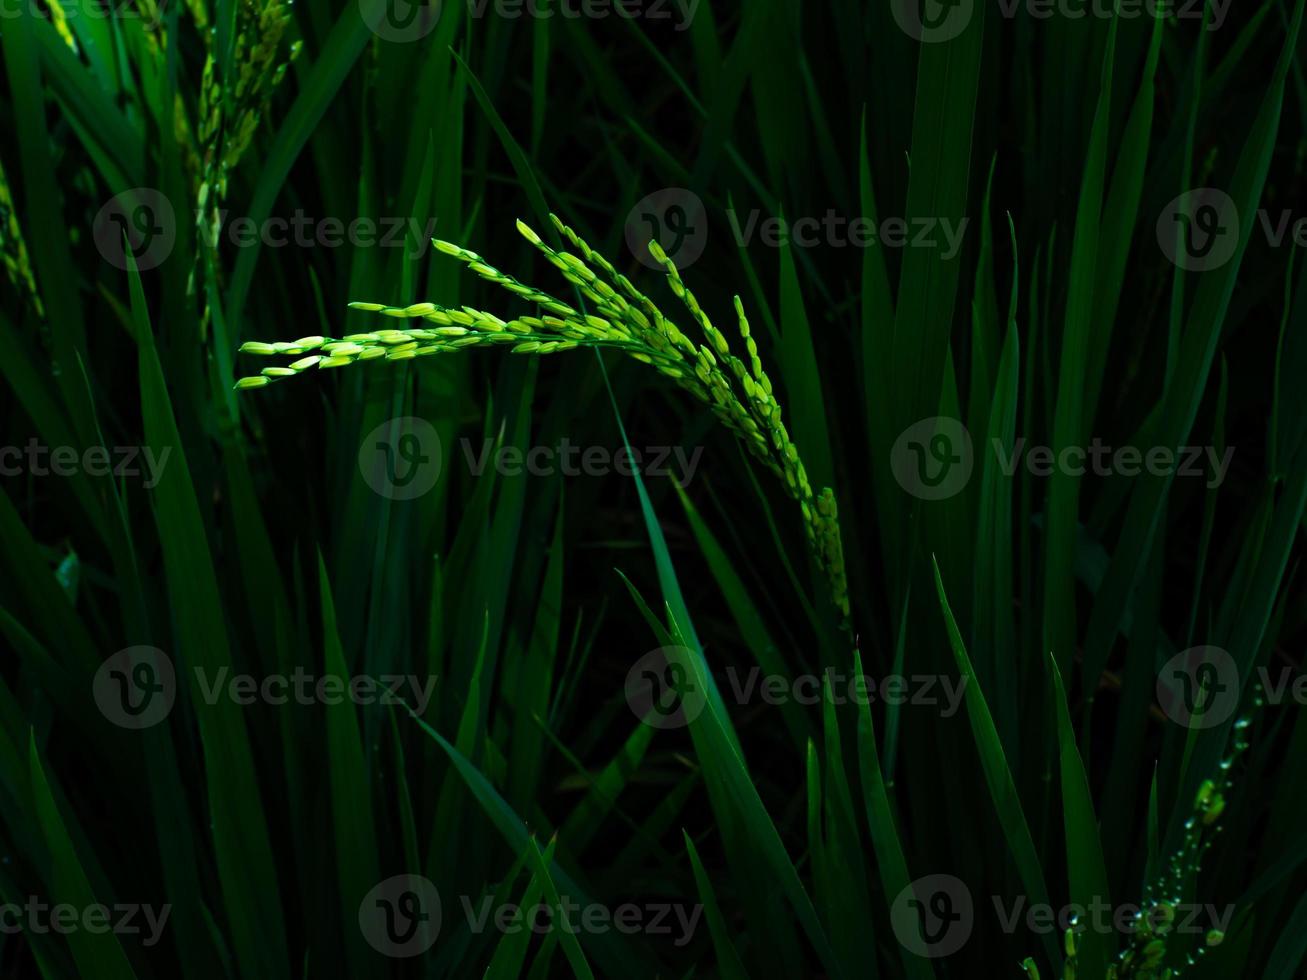 rijstplanten groeien en zijn groen. foto